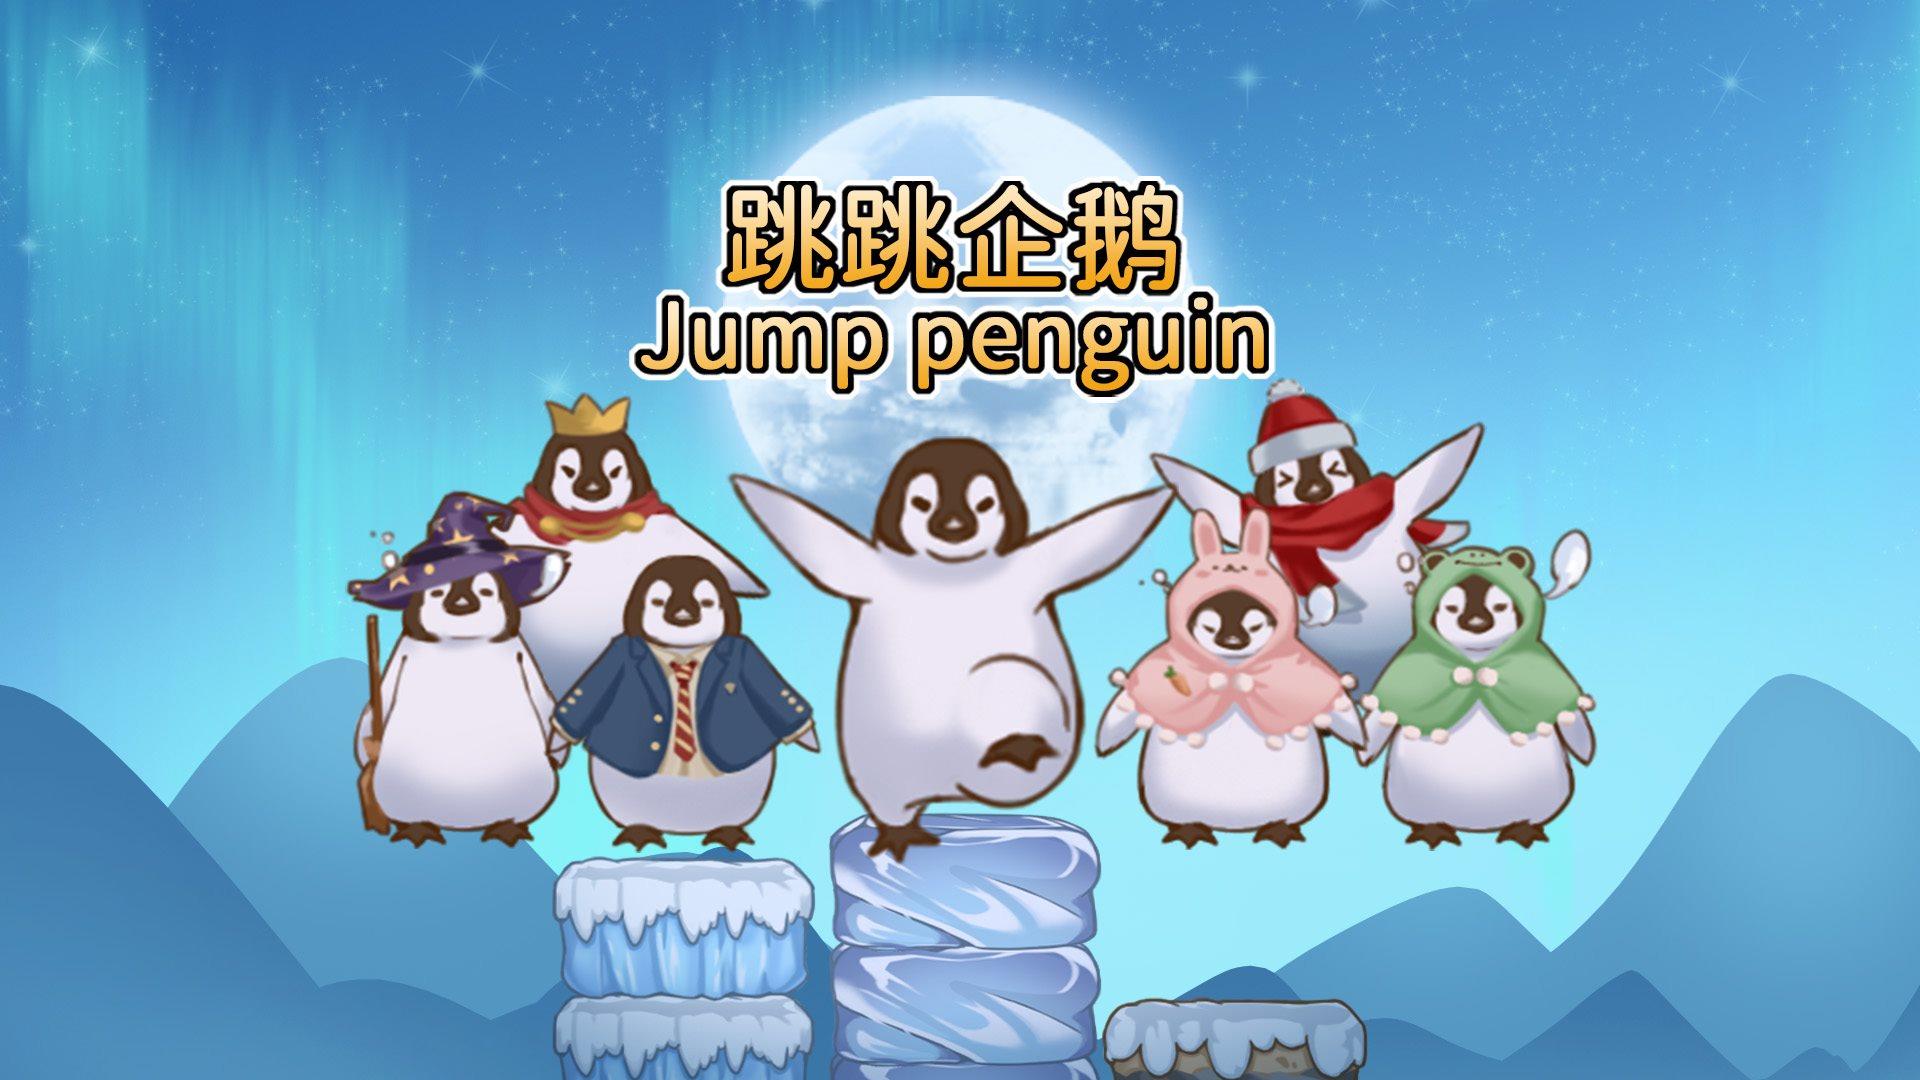 Banner of chim cánh cụt nảy 0.1.2021.0108.3